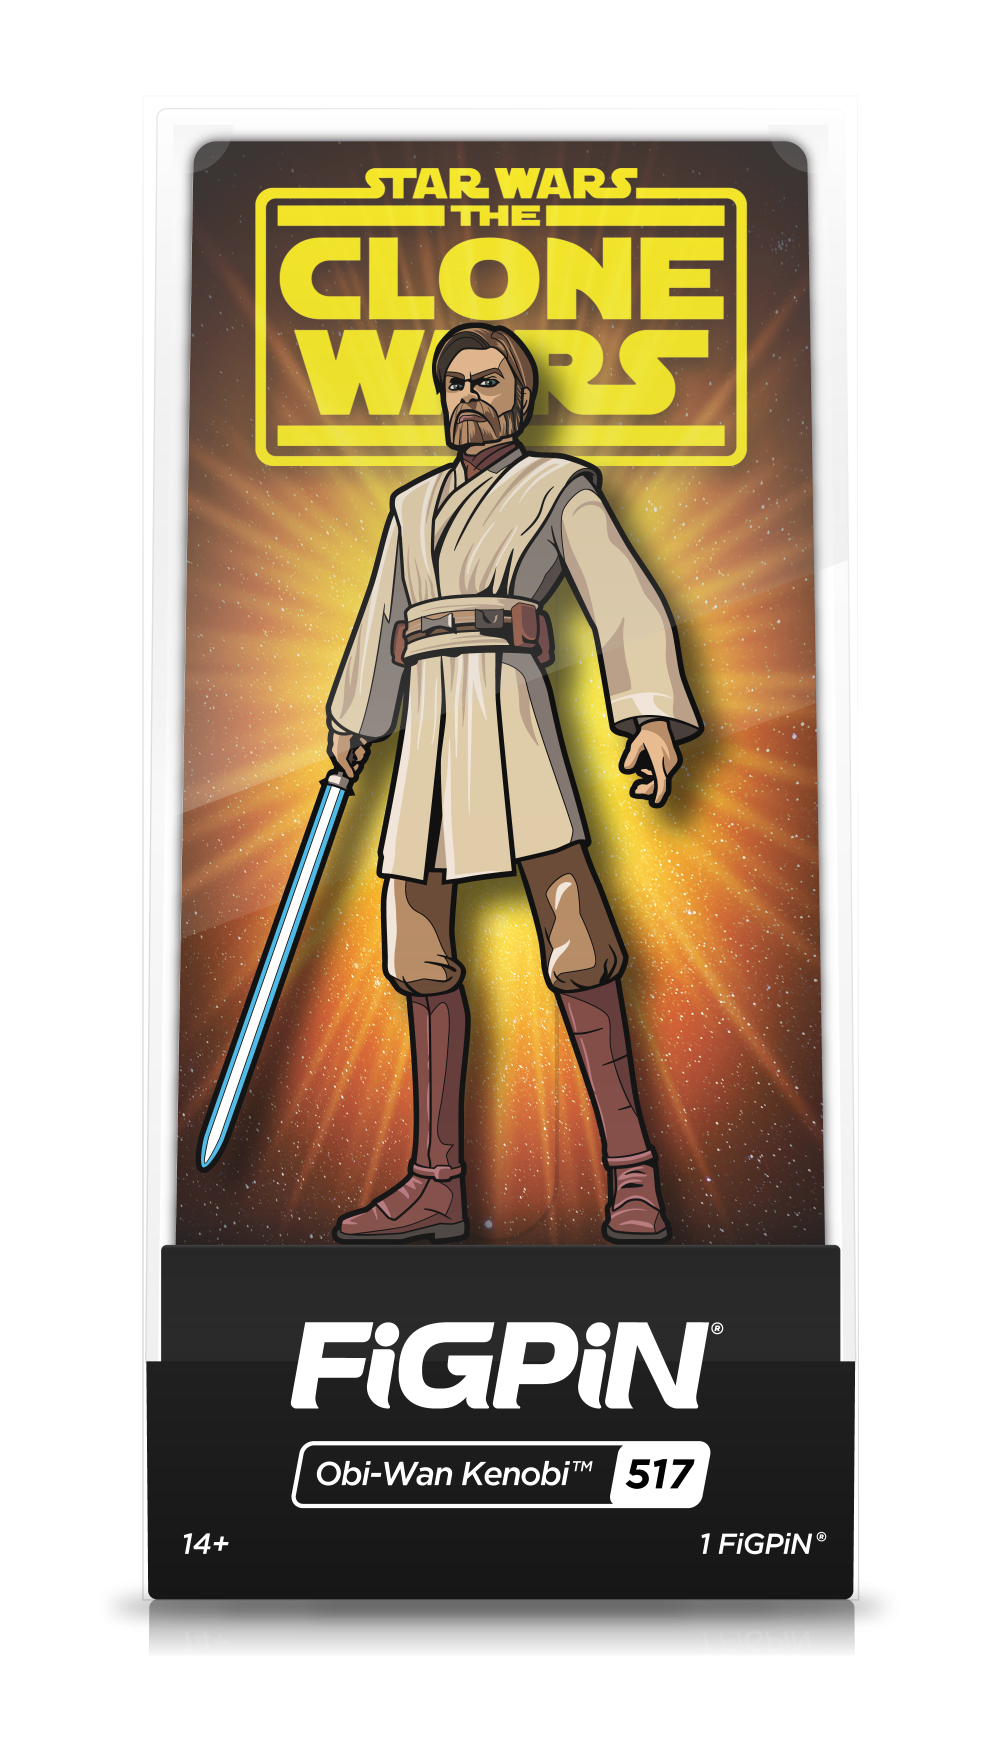 Obi-Wan Kenobi (517)